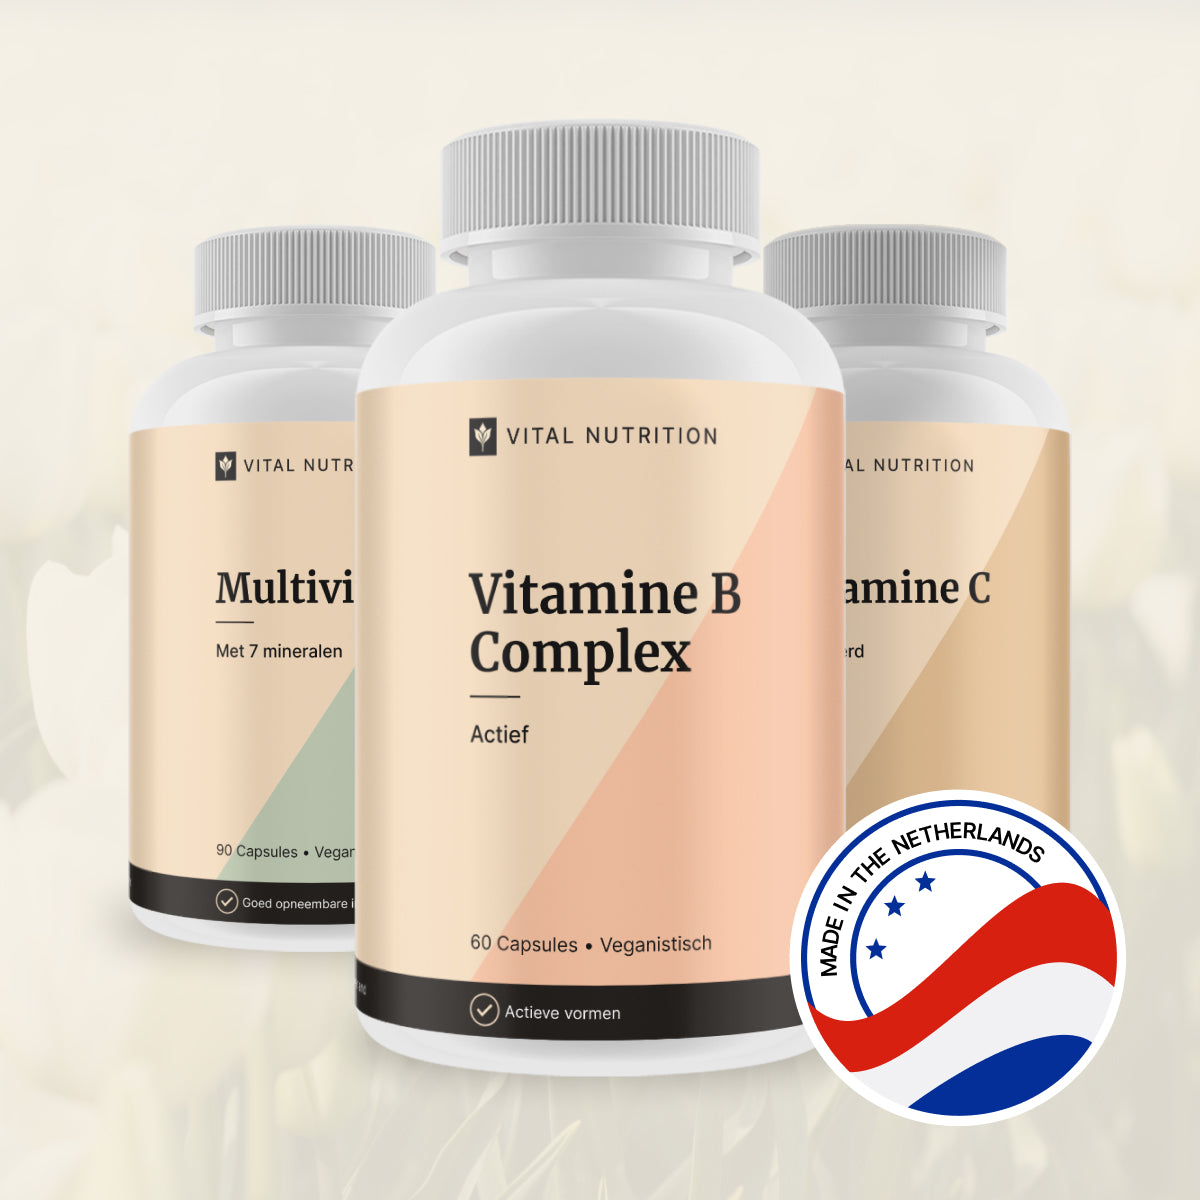 Vitamine B Complex en 2 andere Vital Nutrition supplementen met productie in Nederland icoon